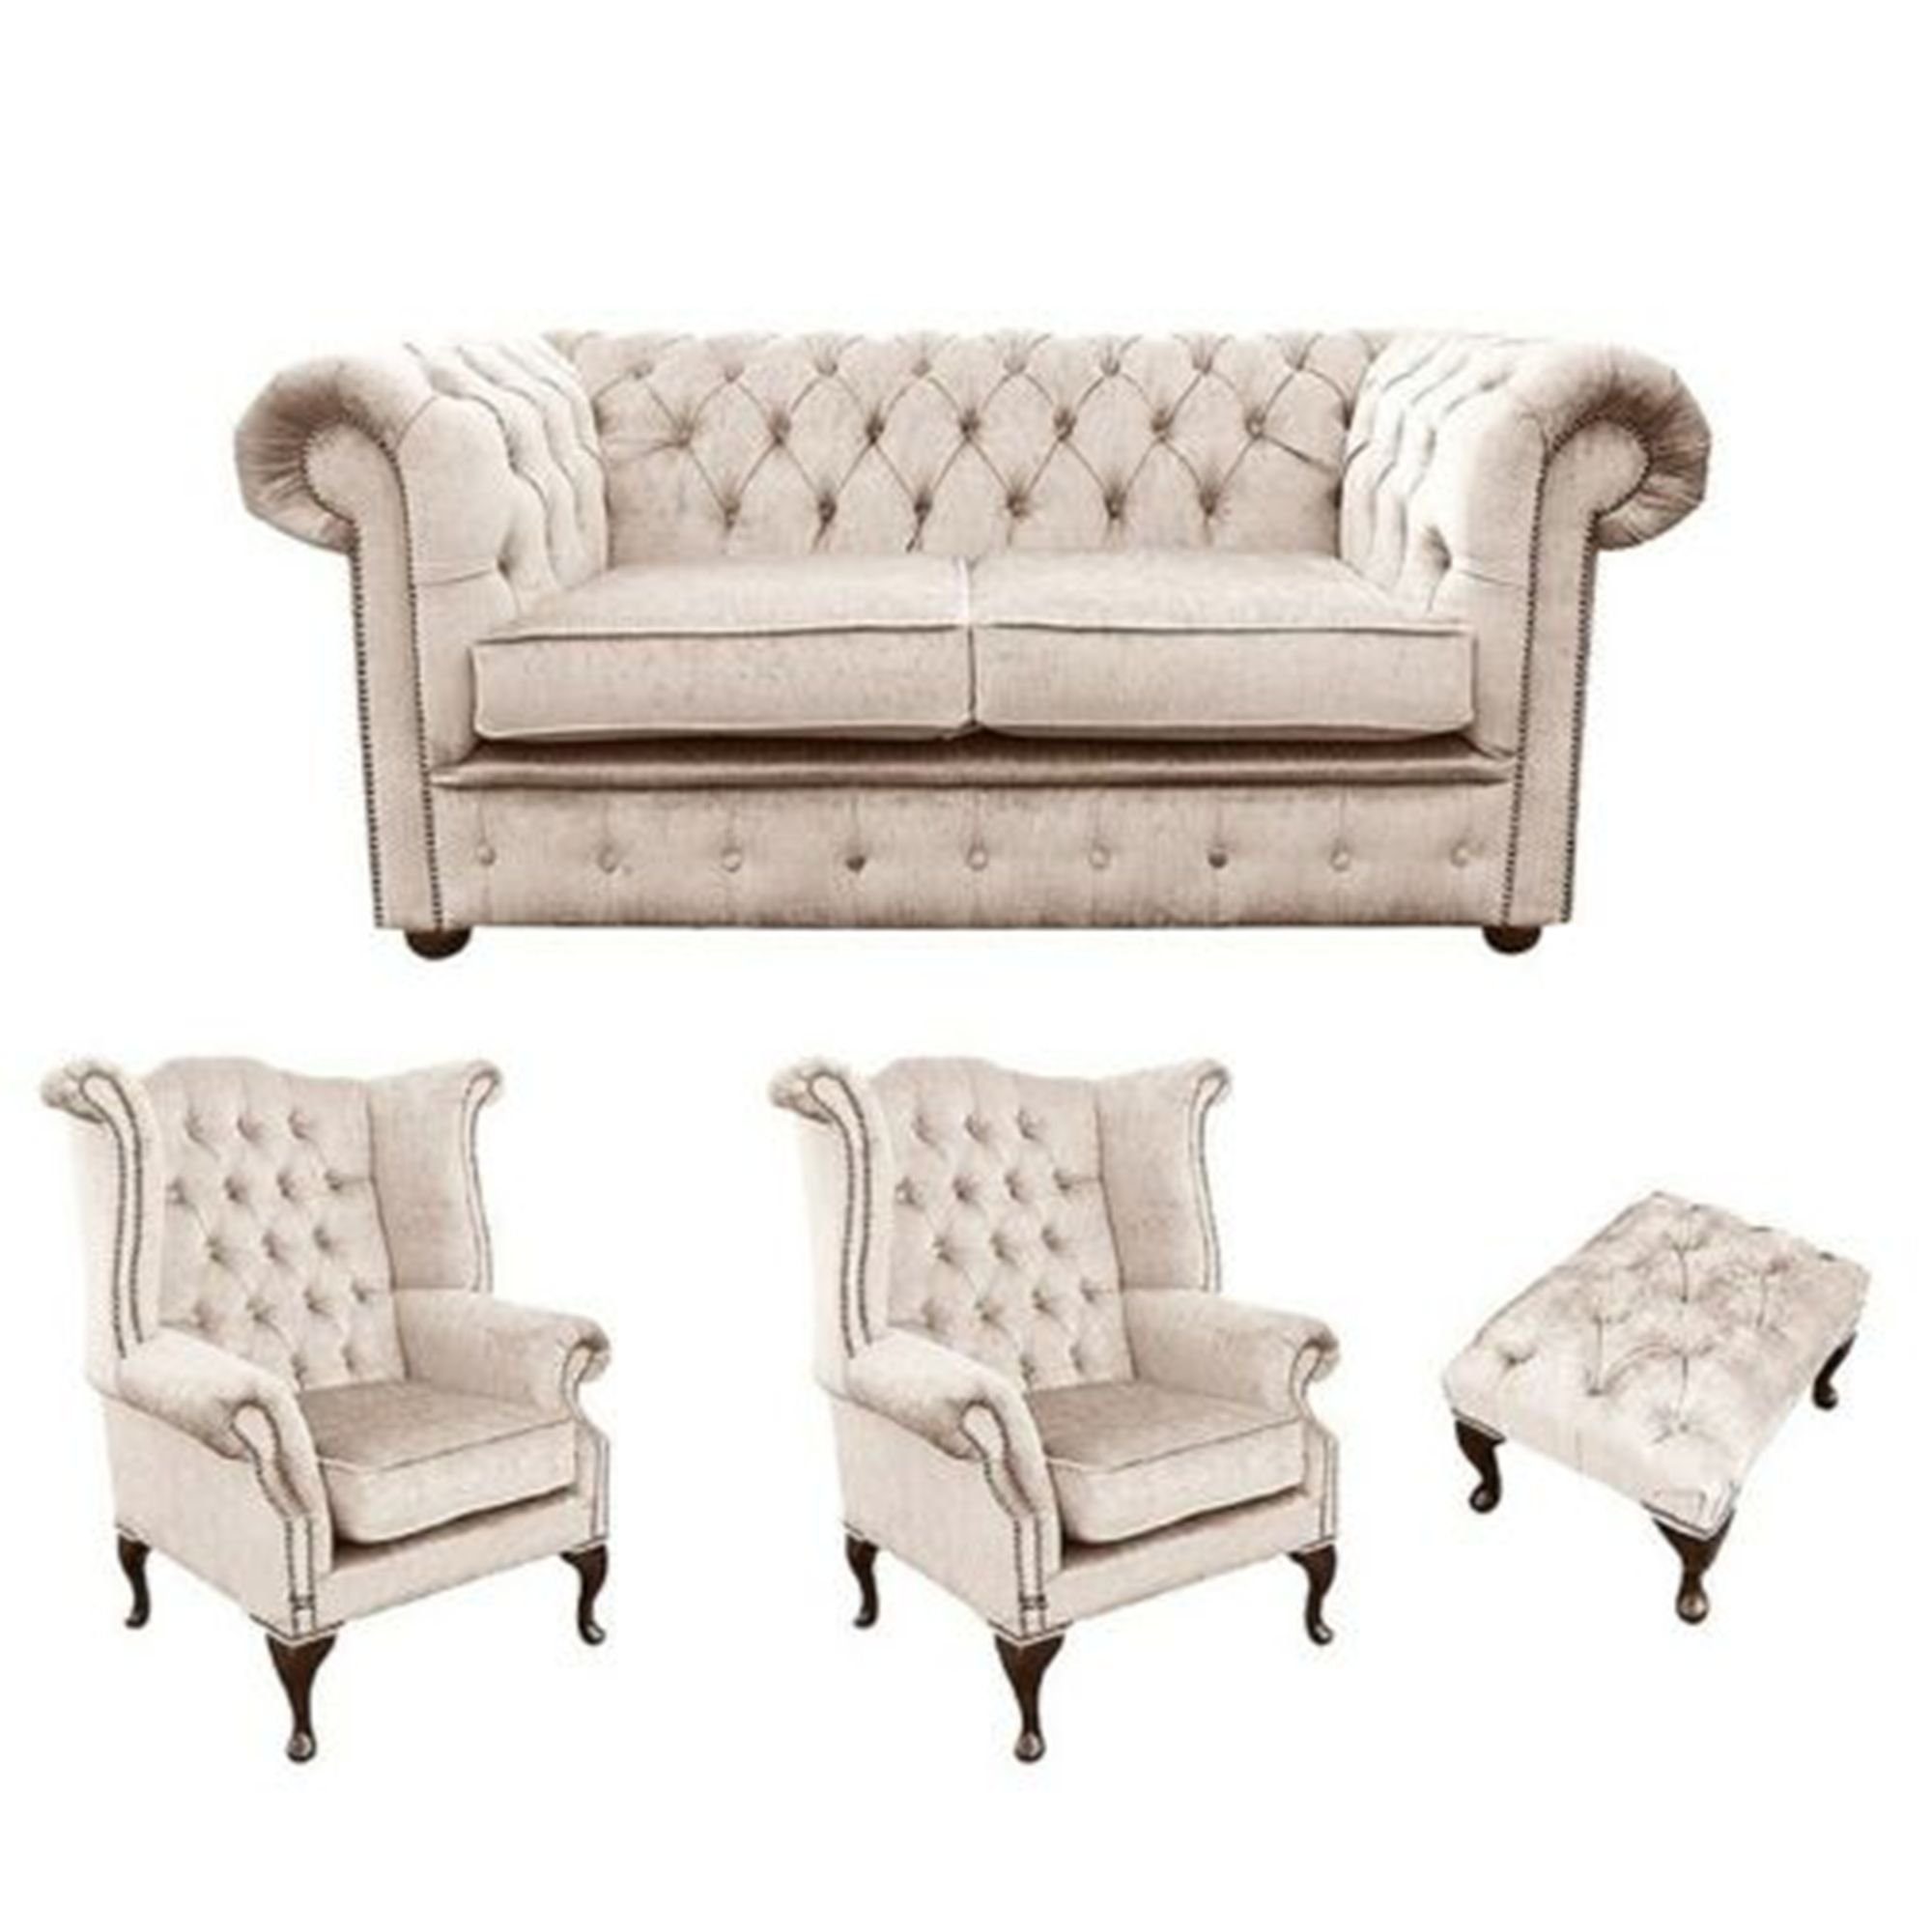 JVmoebel Sofa Beige Chesterfield Design Luxus Polster Garnitur Couch Sitz Garnitur, Made in Europe